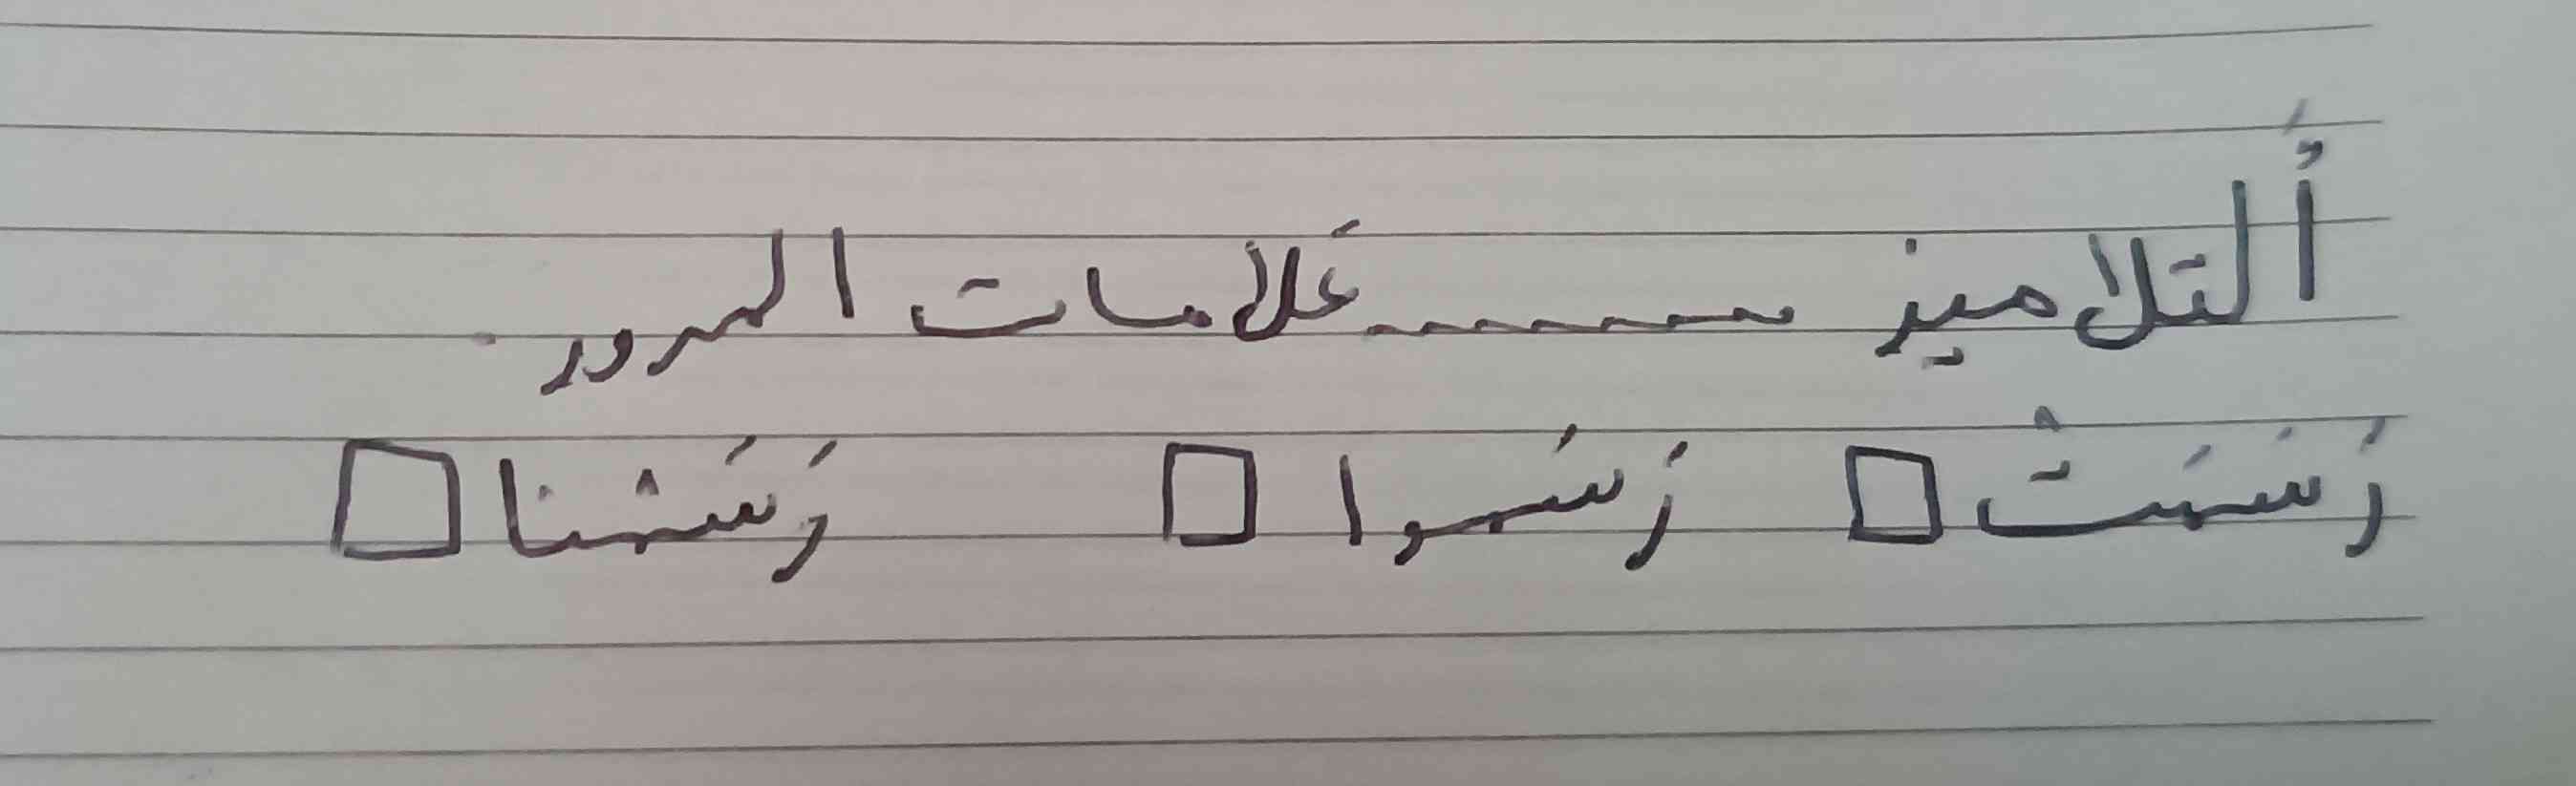 👋🥲فردا امتحان عربی دارم کسی میدونه کدوم فعل مناسبه؟
لطفاً توضیح بدید
همه تاج میدم ☄️